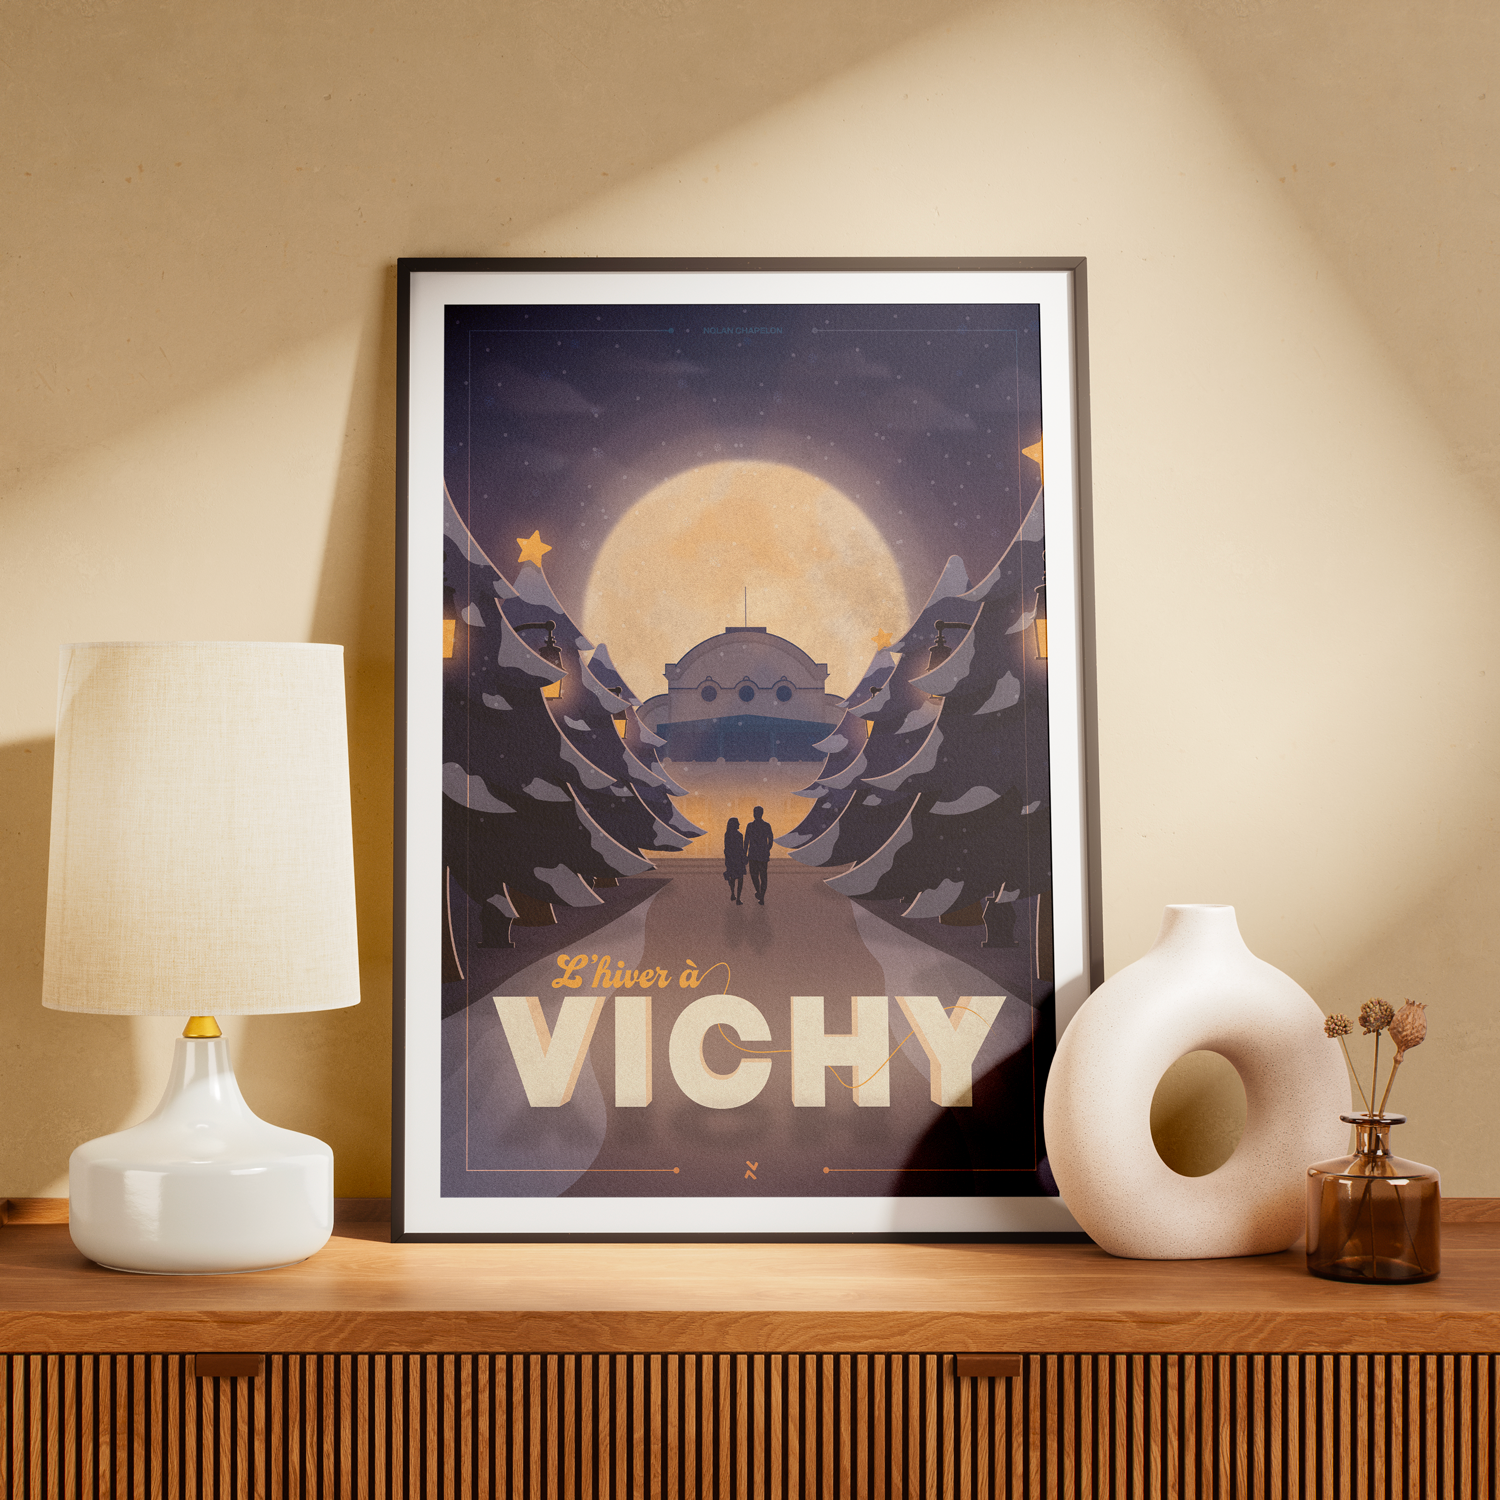 L'hiver à Vichy